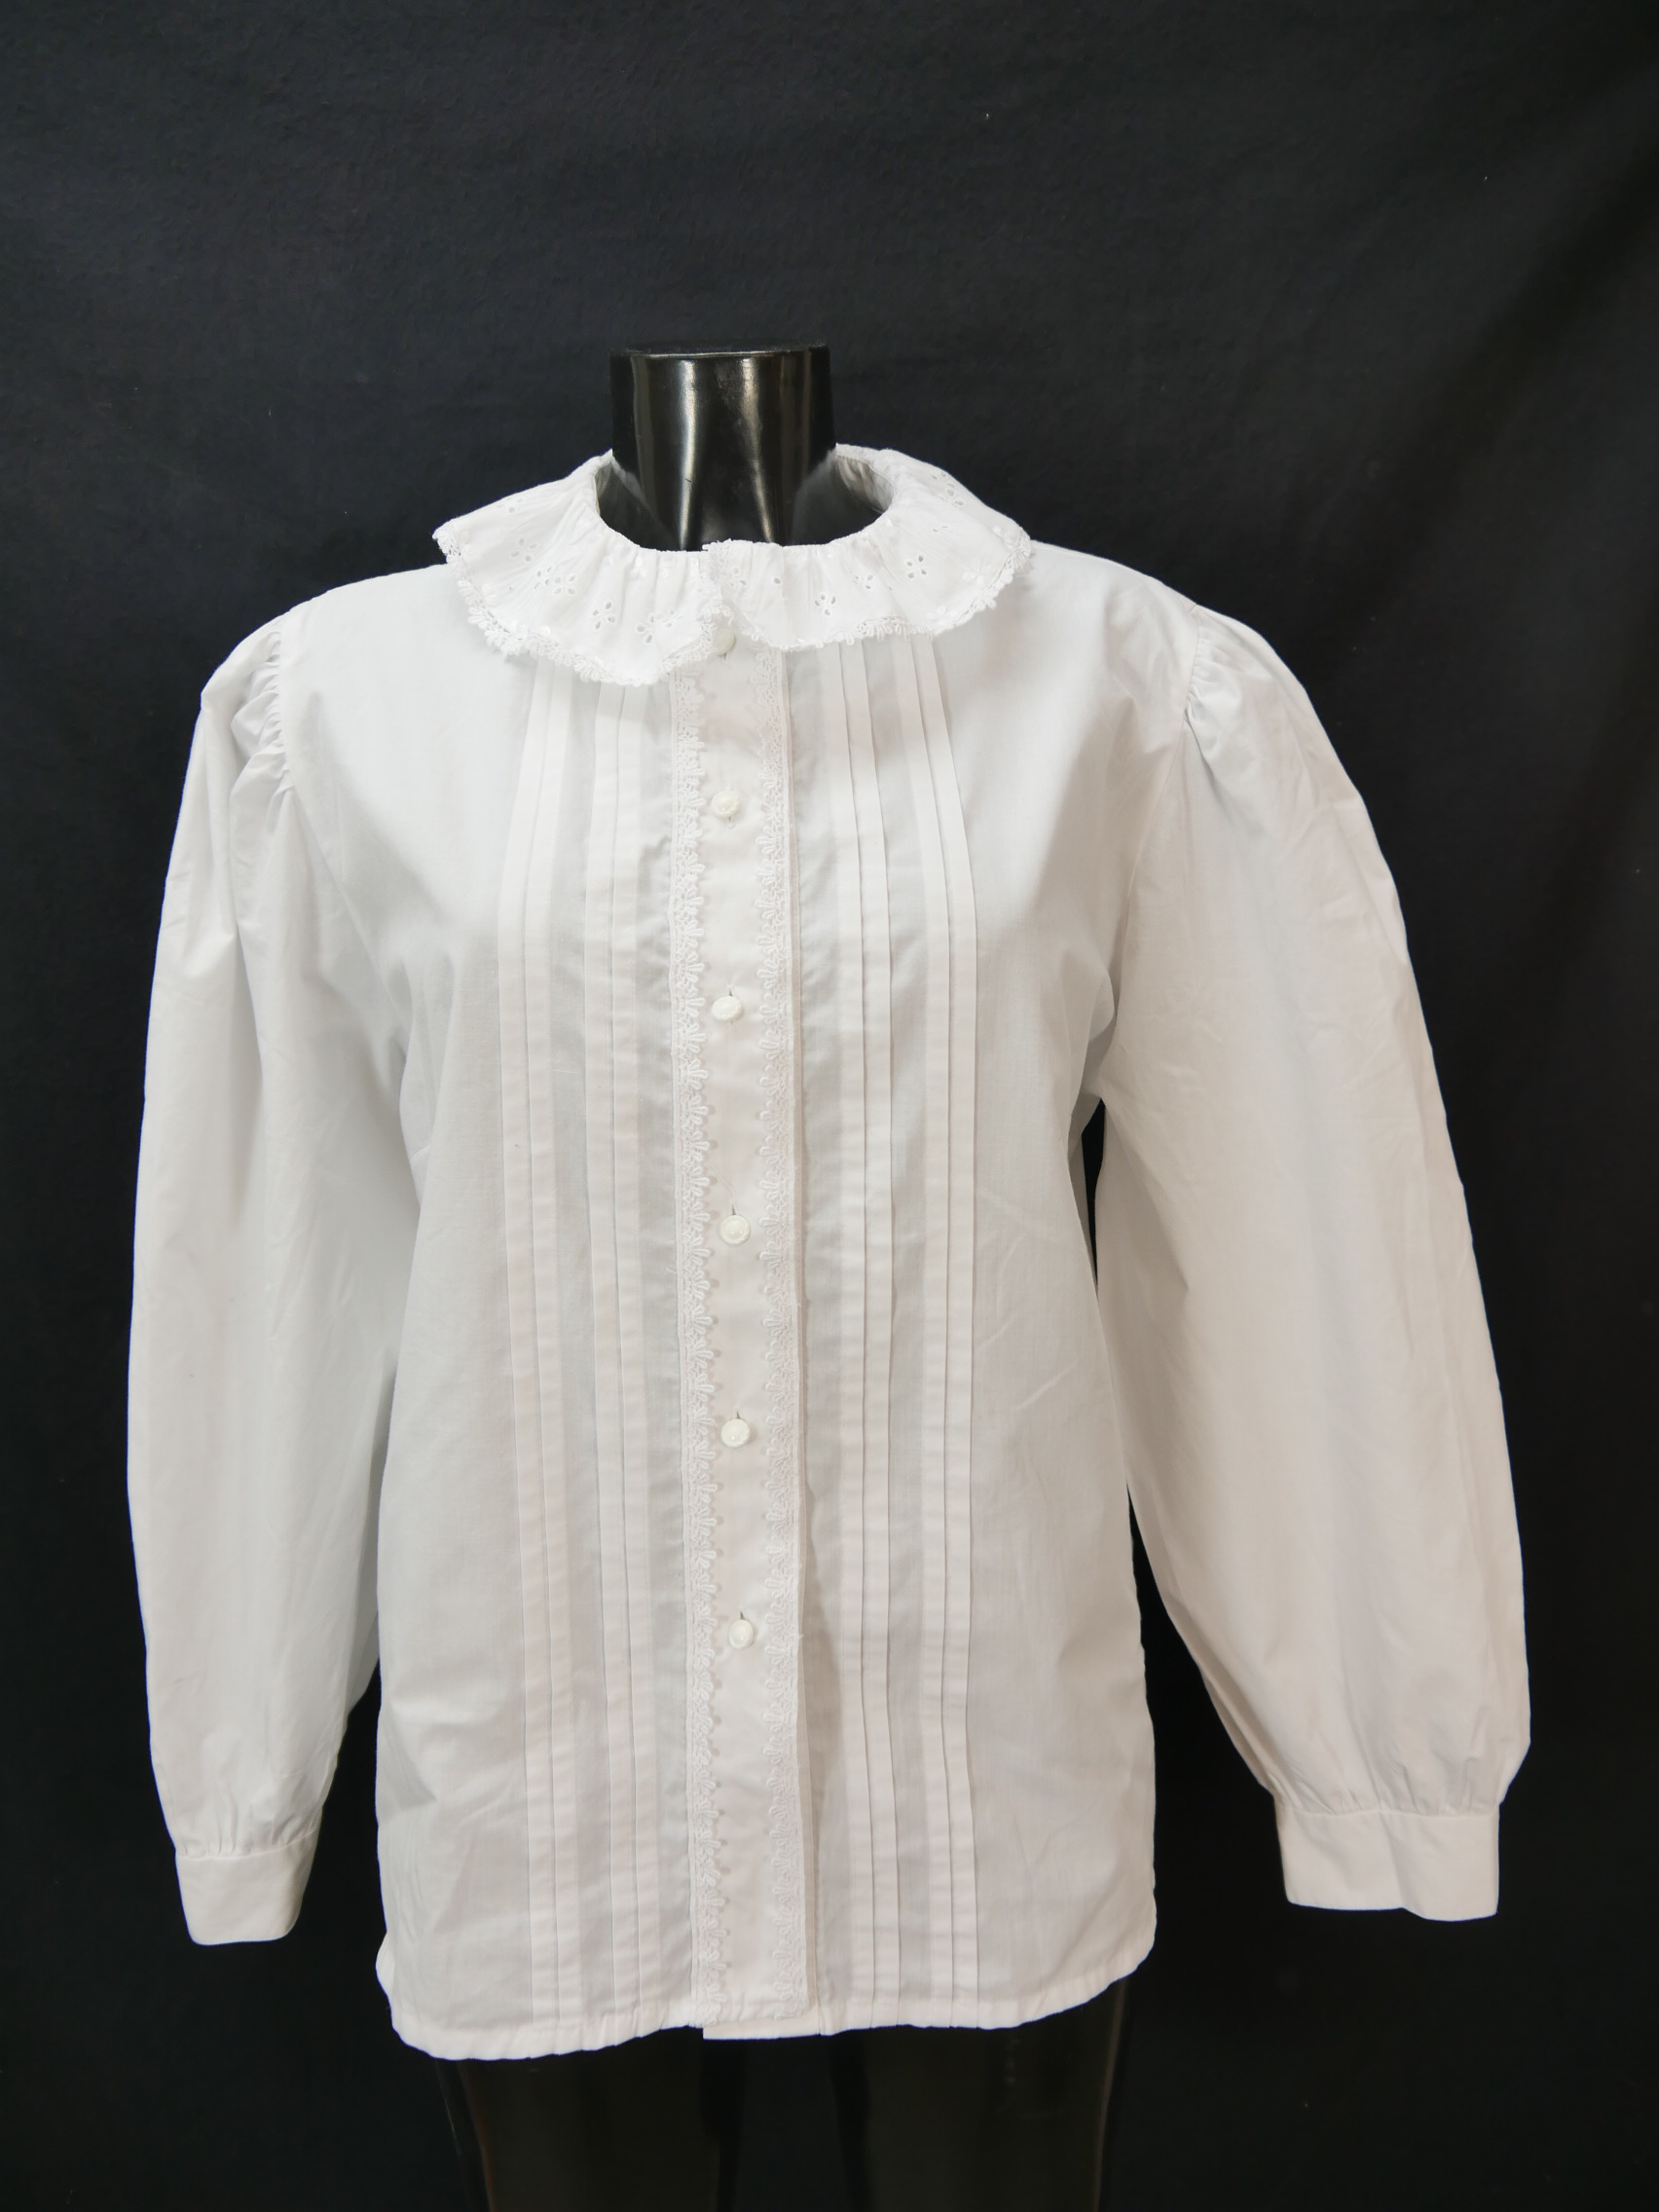 Size 44 Trachten blouse white Blouse Alphorn cotton blend with lace ...